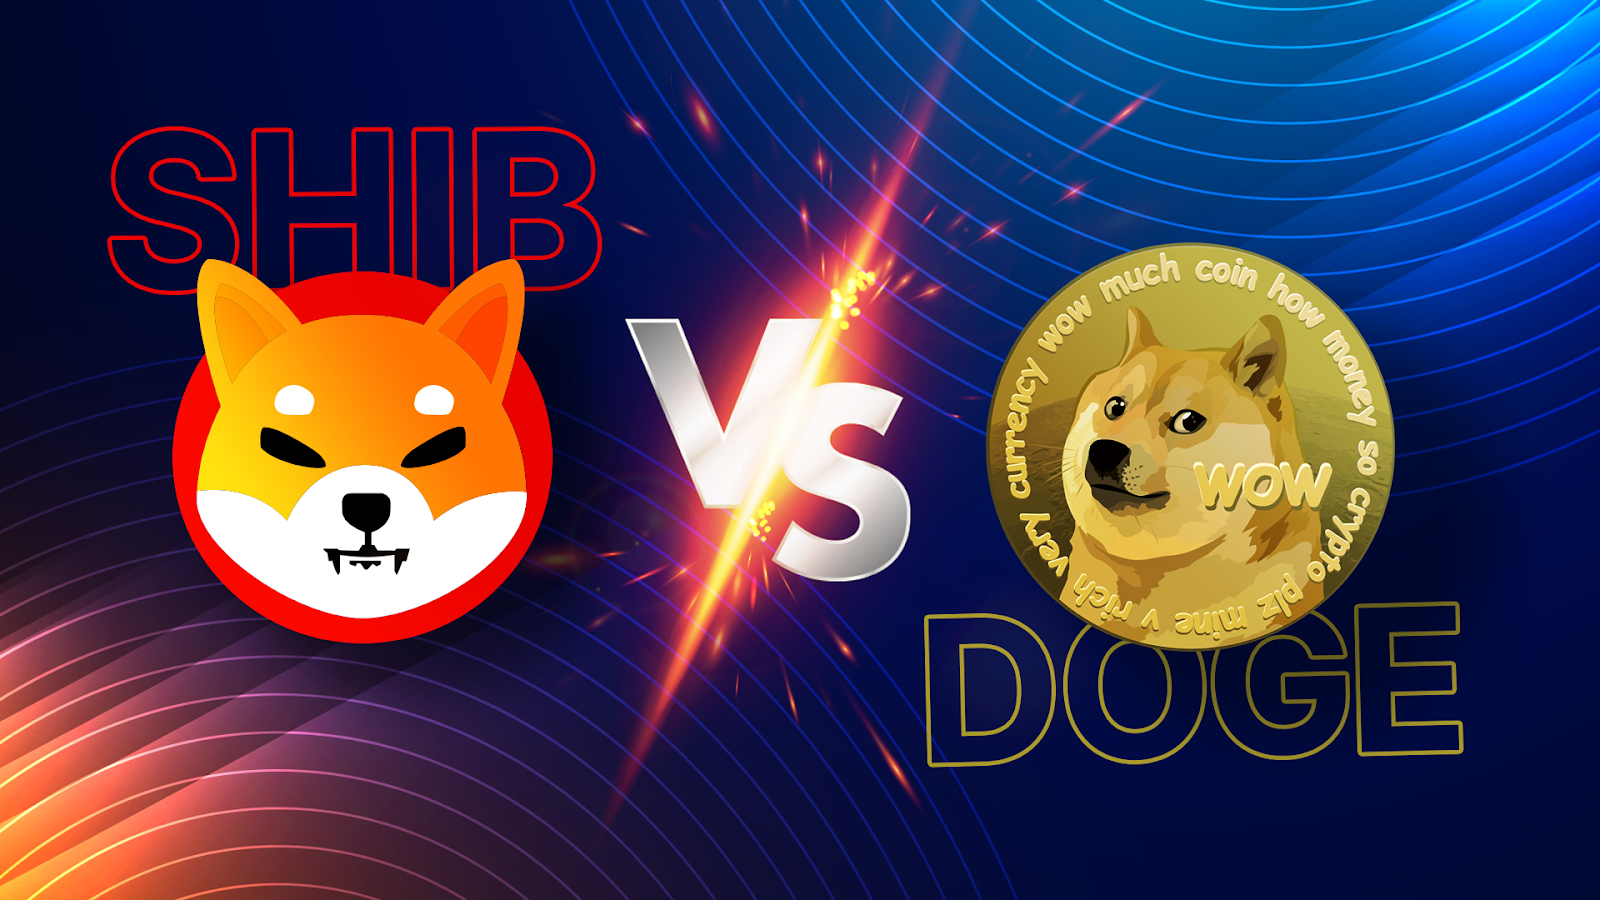 Shiba Inu vs Dogecoin